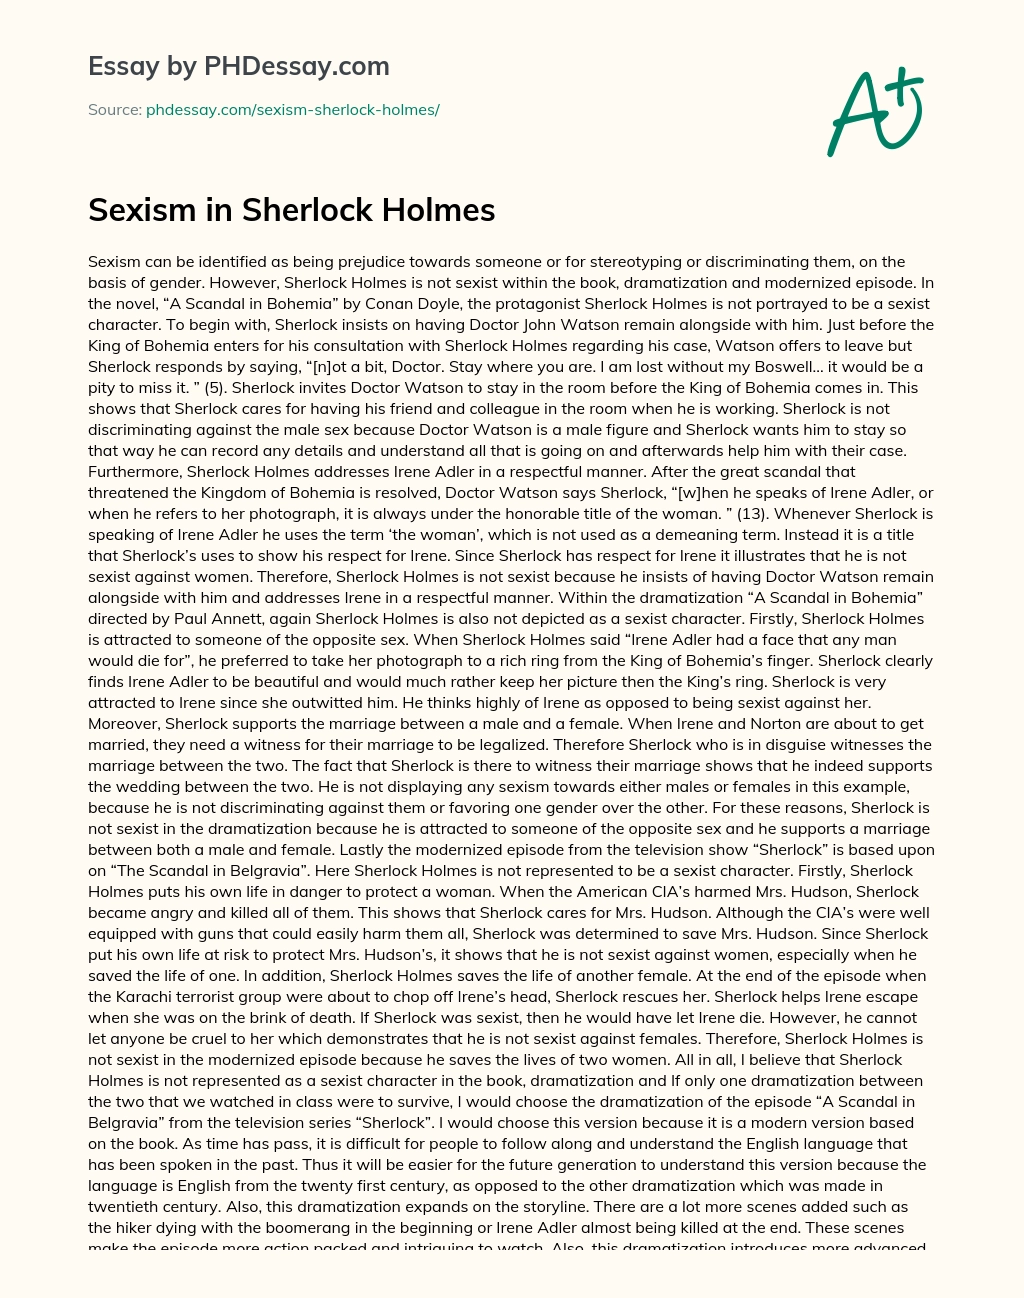 Sexism in Sherlock Holmes essay